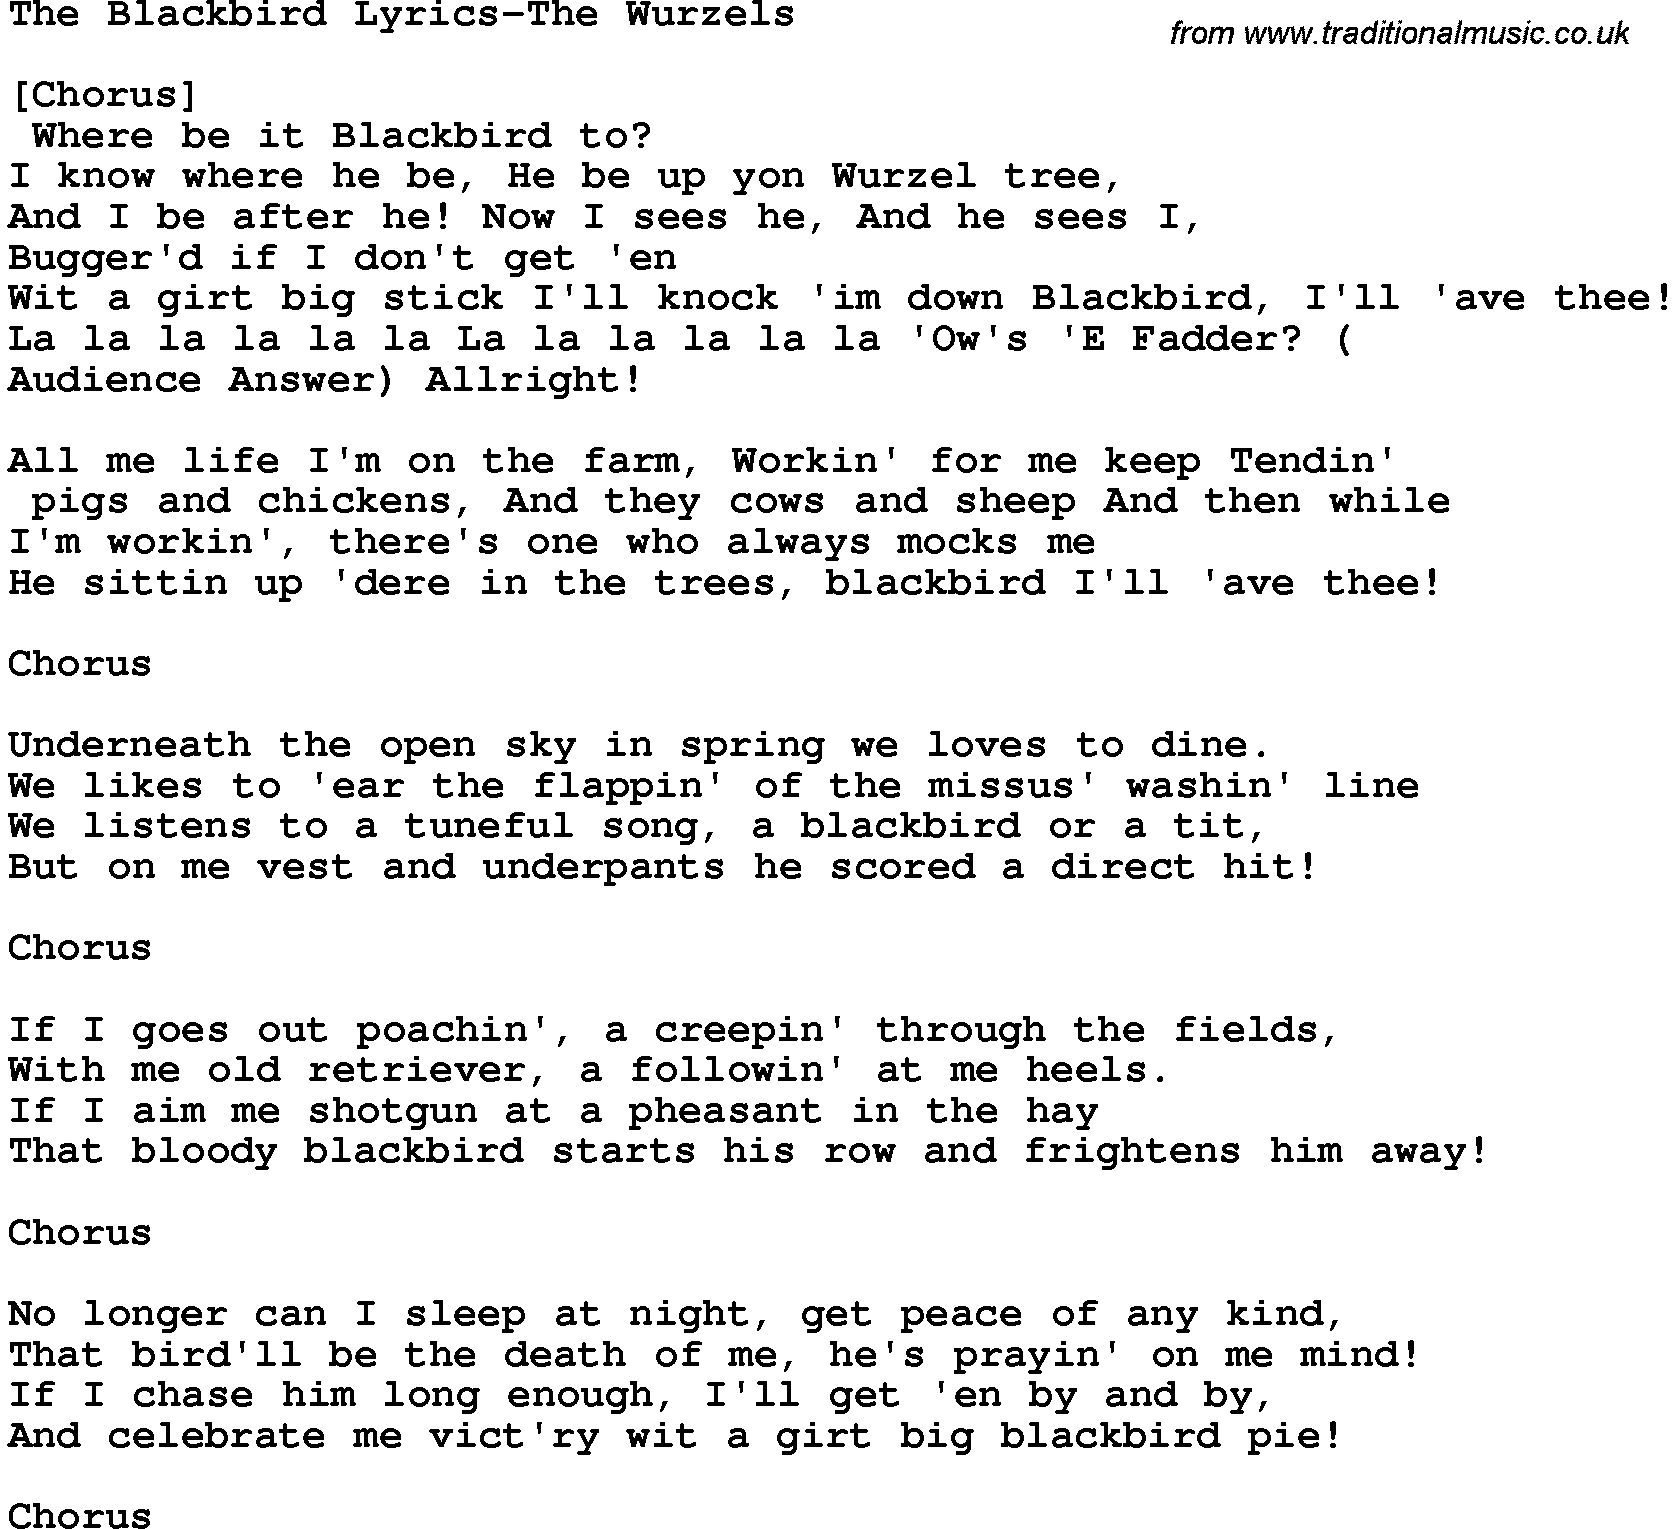 Novelty song: The Blackbird Lyrics-The Wurzels lyrics